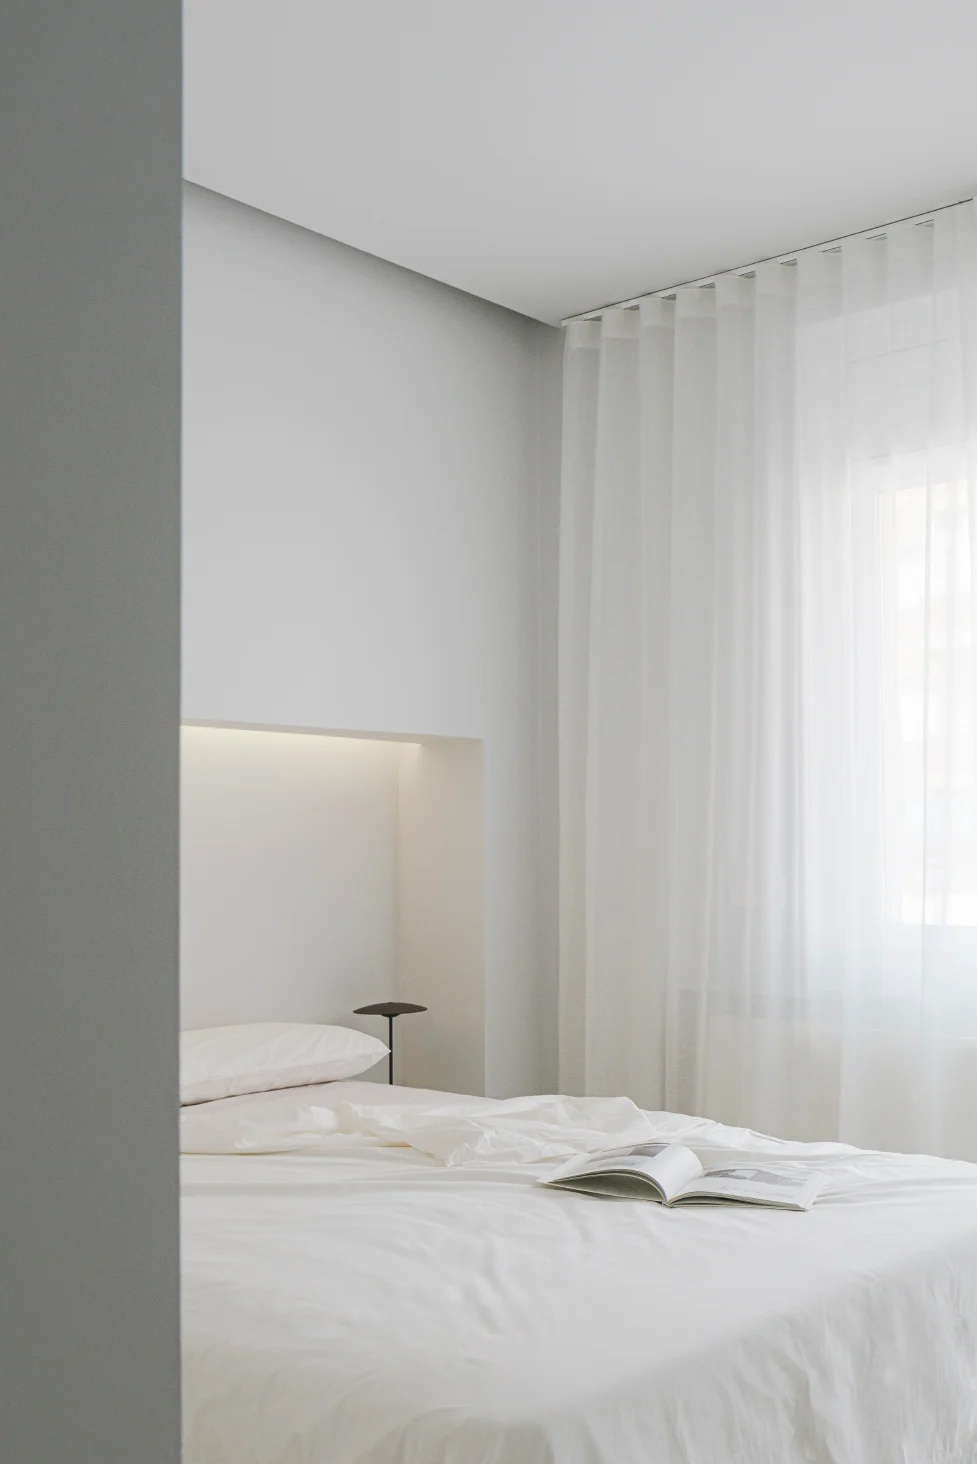 極簡公寓設計案例,公寓設計,極簡主義,國外極簡風格公寓設計,Deza Setien,馬德裏,原木色+白色,公寓設計方案,135㎡